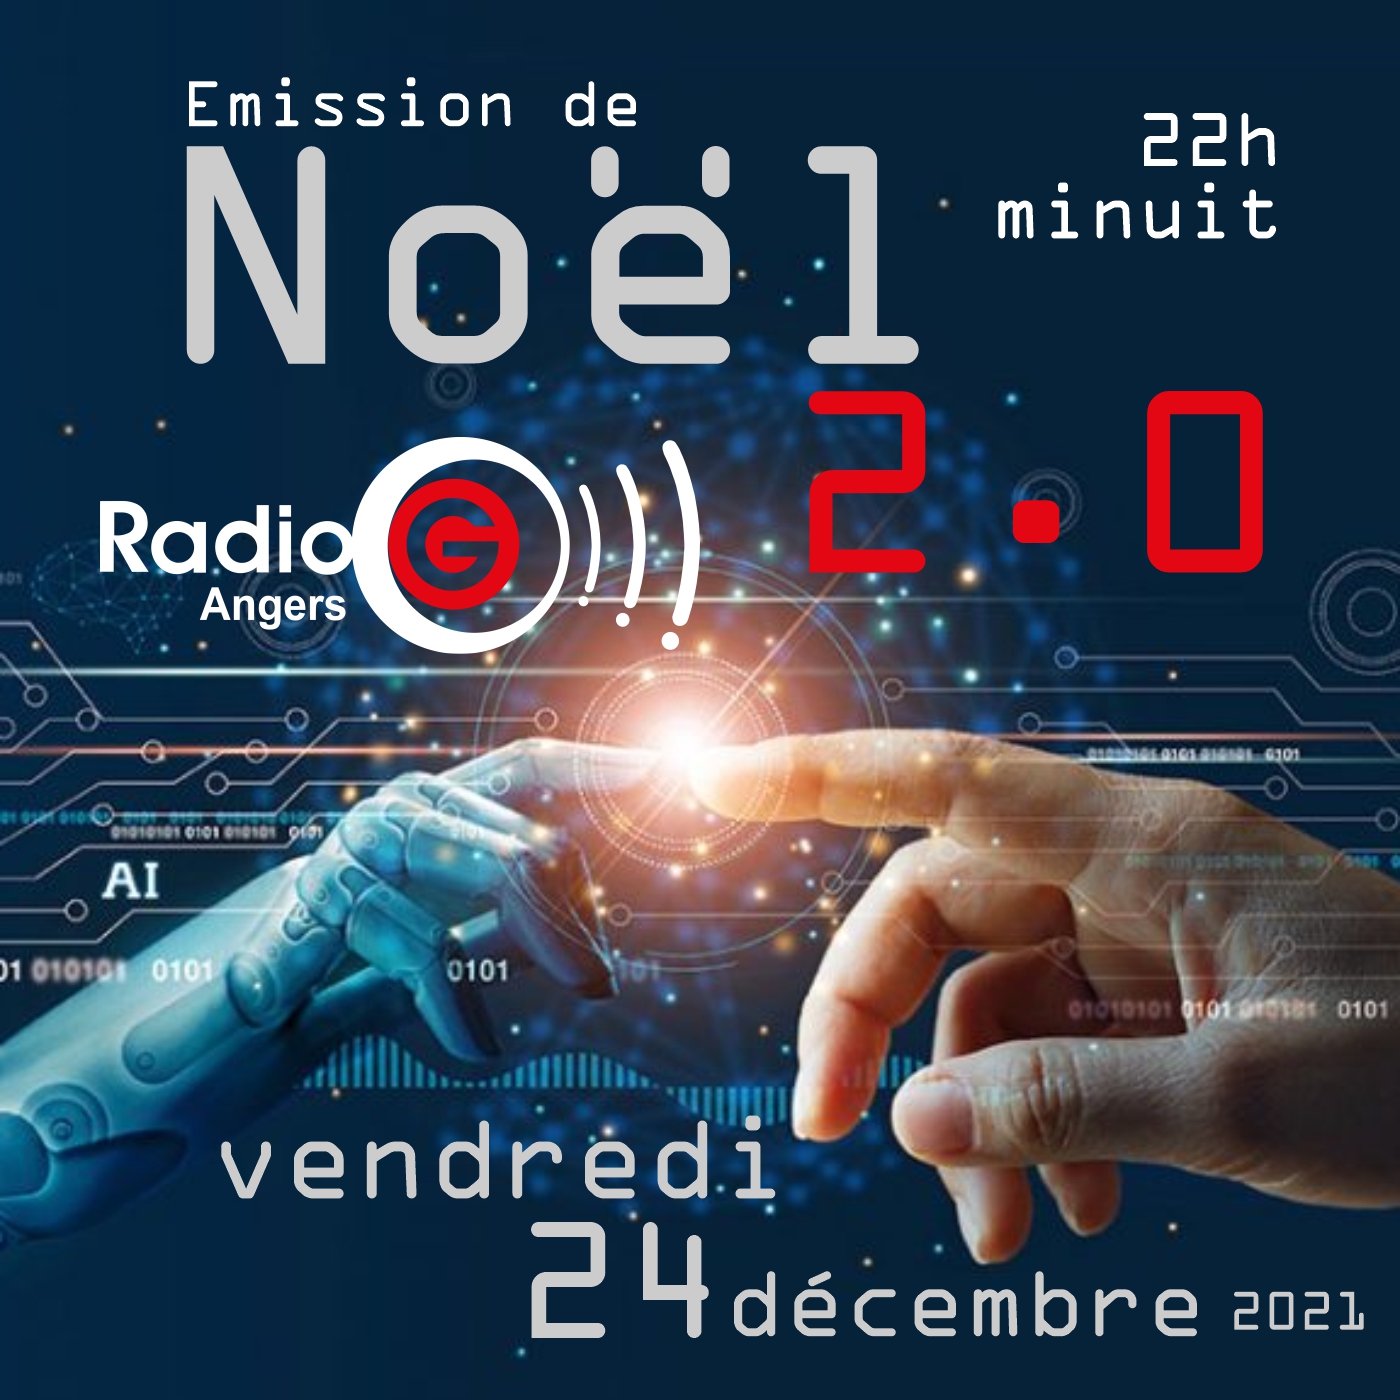 Noel 2.0 du 24 12 2021 Noel ensemble de 22h a minuit sur Radiog le 24 decembre 2021 Noel 2.0 du 24 12 2021